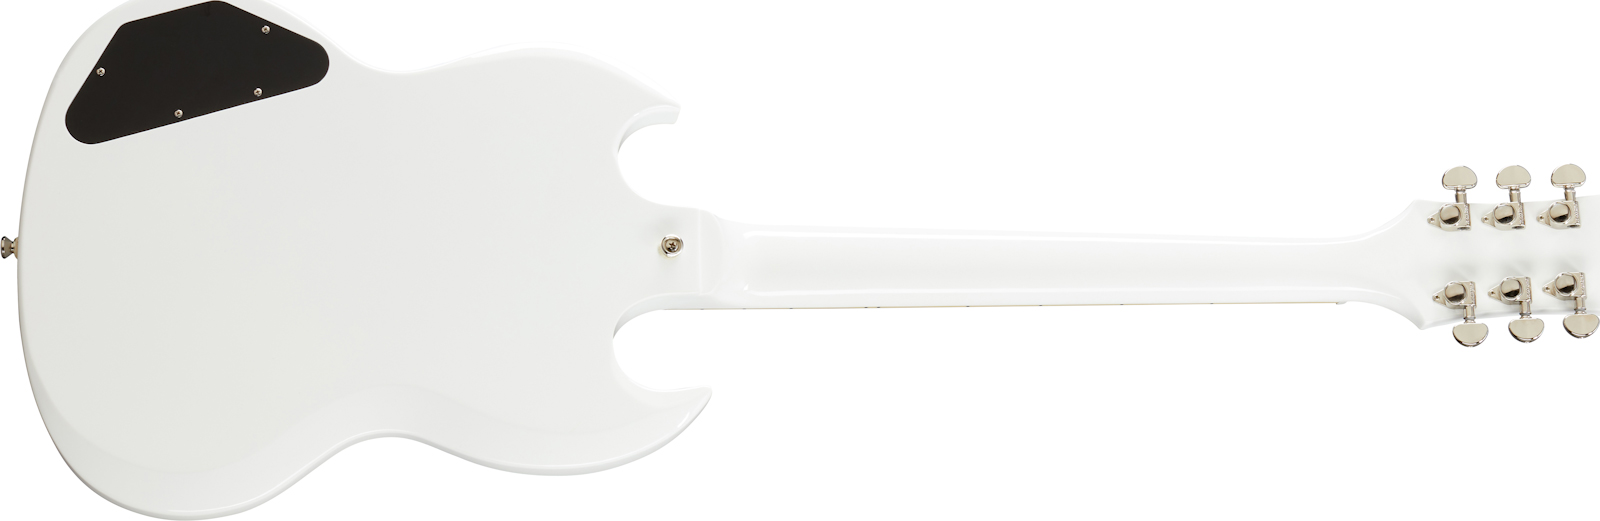 Epiphone Sg Standard 2h Ht Lau - Alpine White - Guitarra eléctrica de doble corte - Variation 1